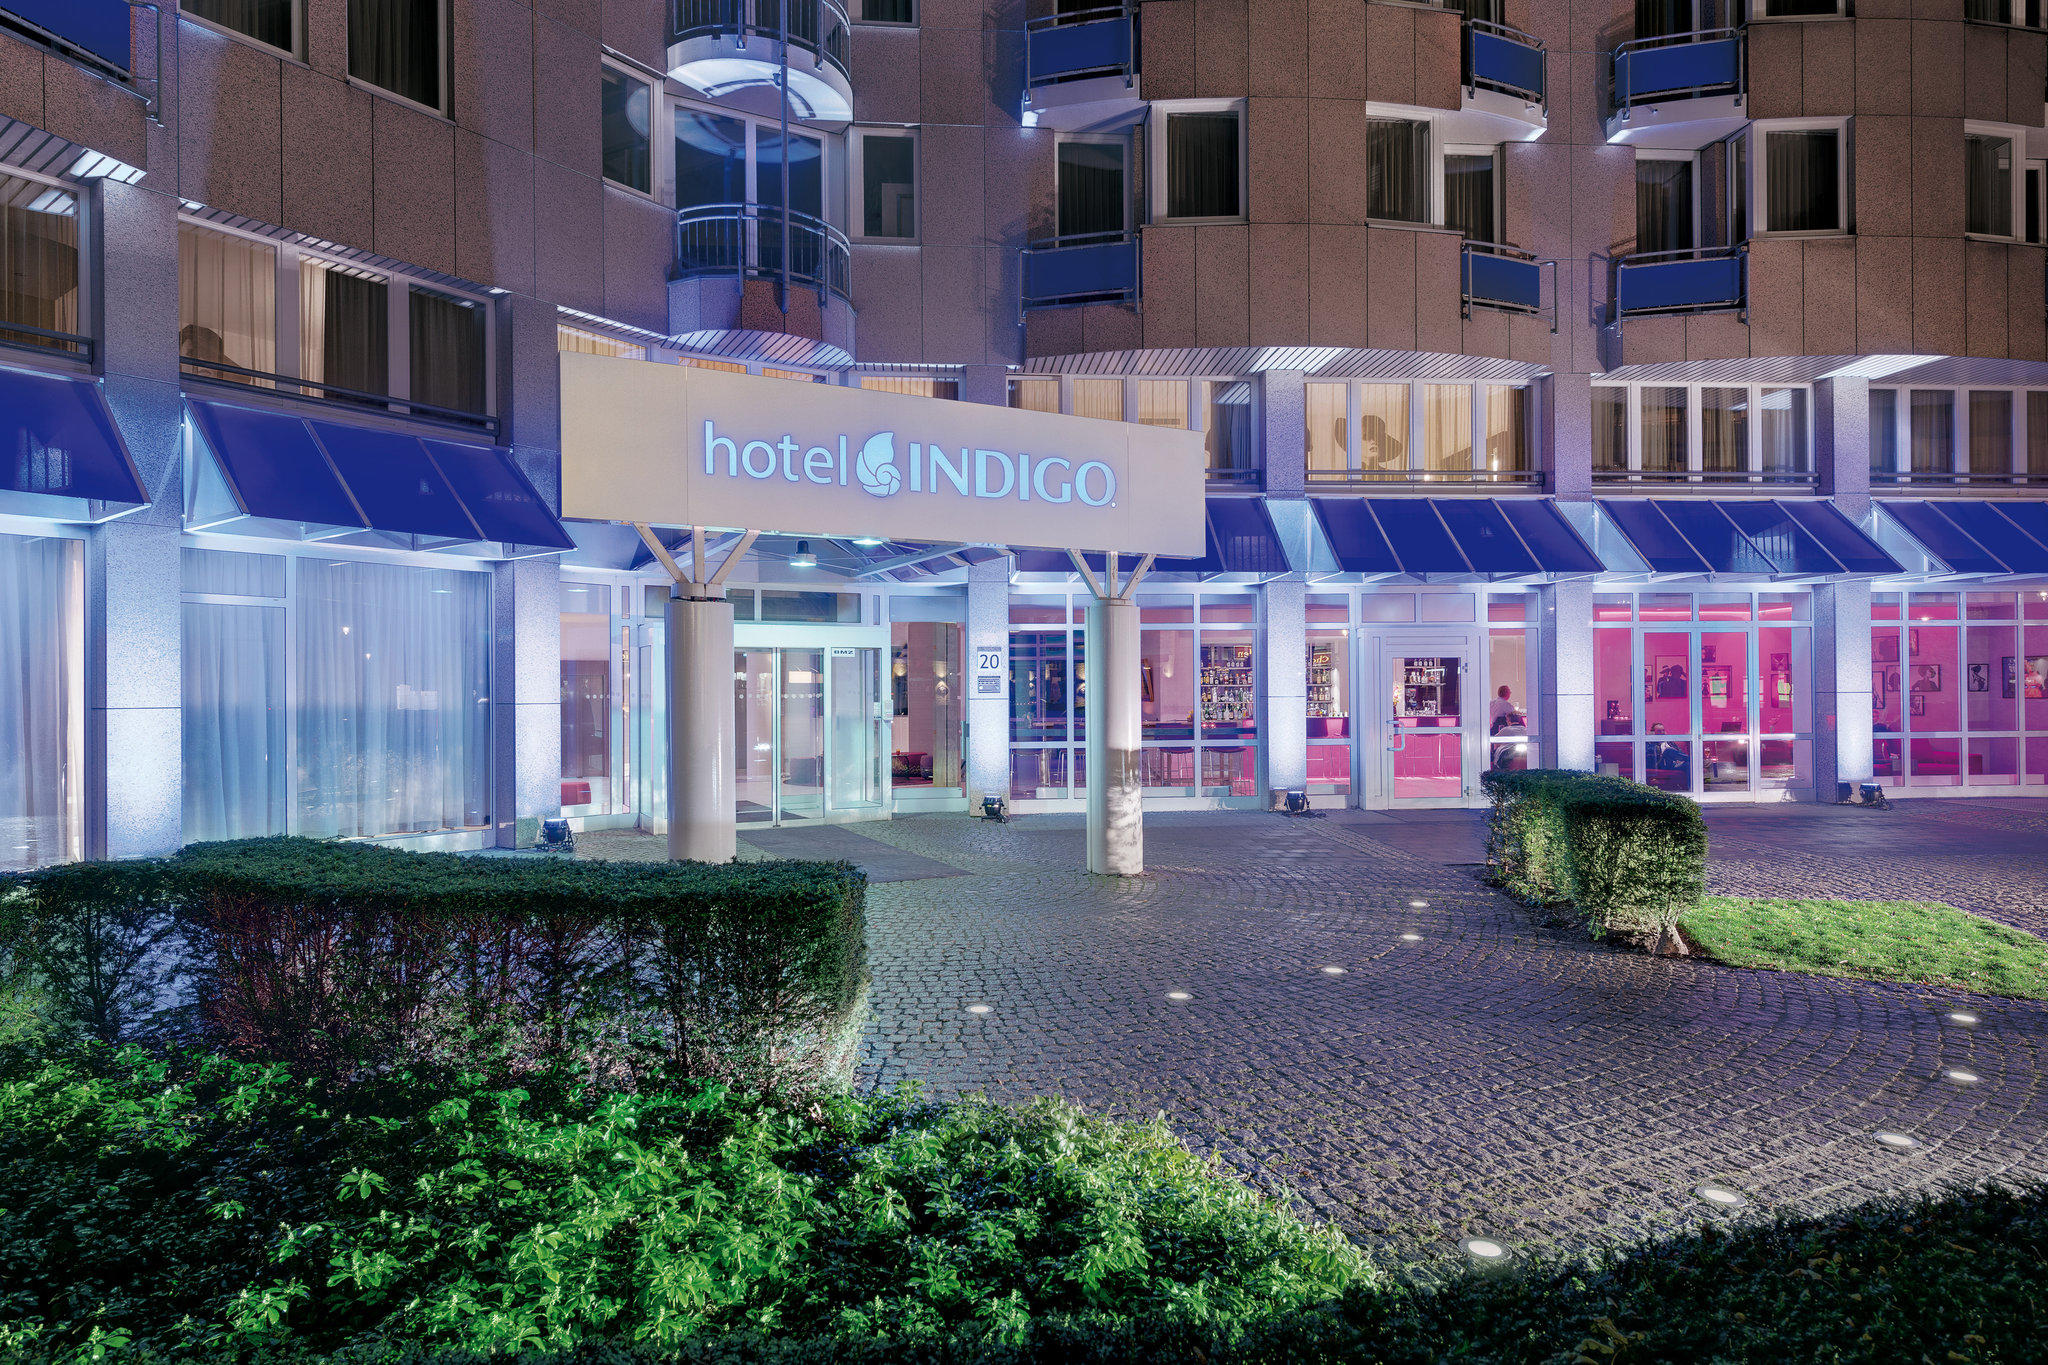 Hotel Indigo Dusseldorf - Victoriaplatz, an IHG Hotel, Kaiserswerther Strasse 20 in Dusseldorf